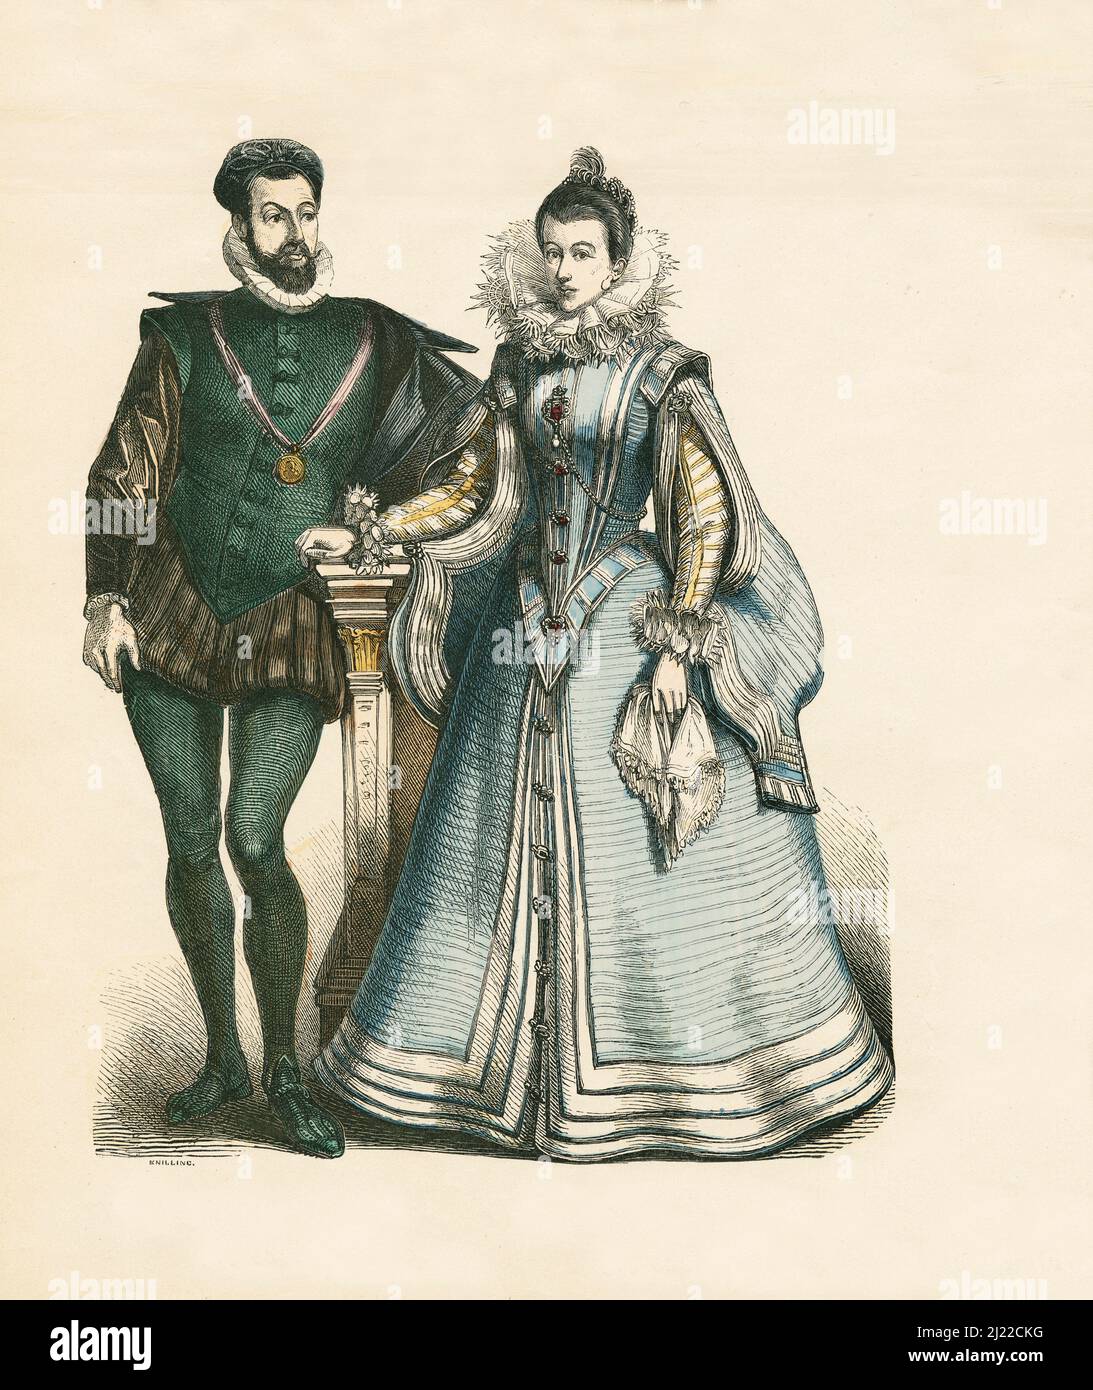 Robe de cour française, deuxième tiers du 16th siècle, Illustration, l'histoire du costume, Braun & Schneider, Munich, Allemagne, 1861-1880 Banque D'Images